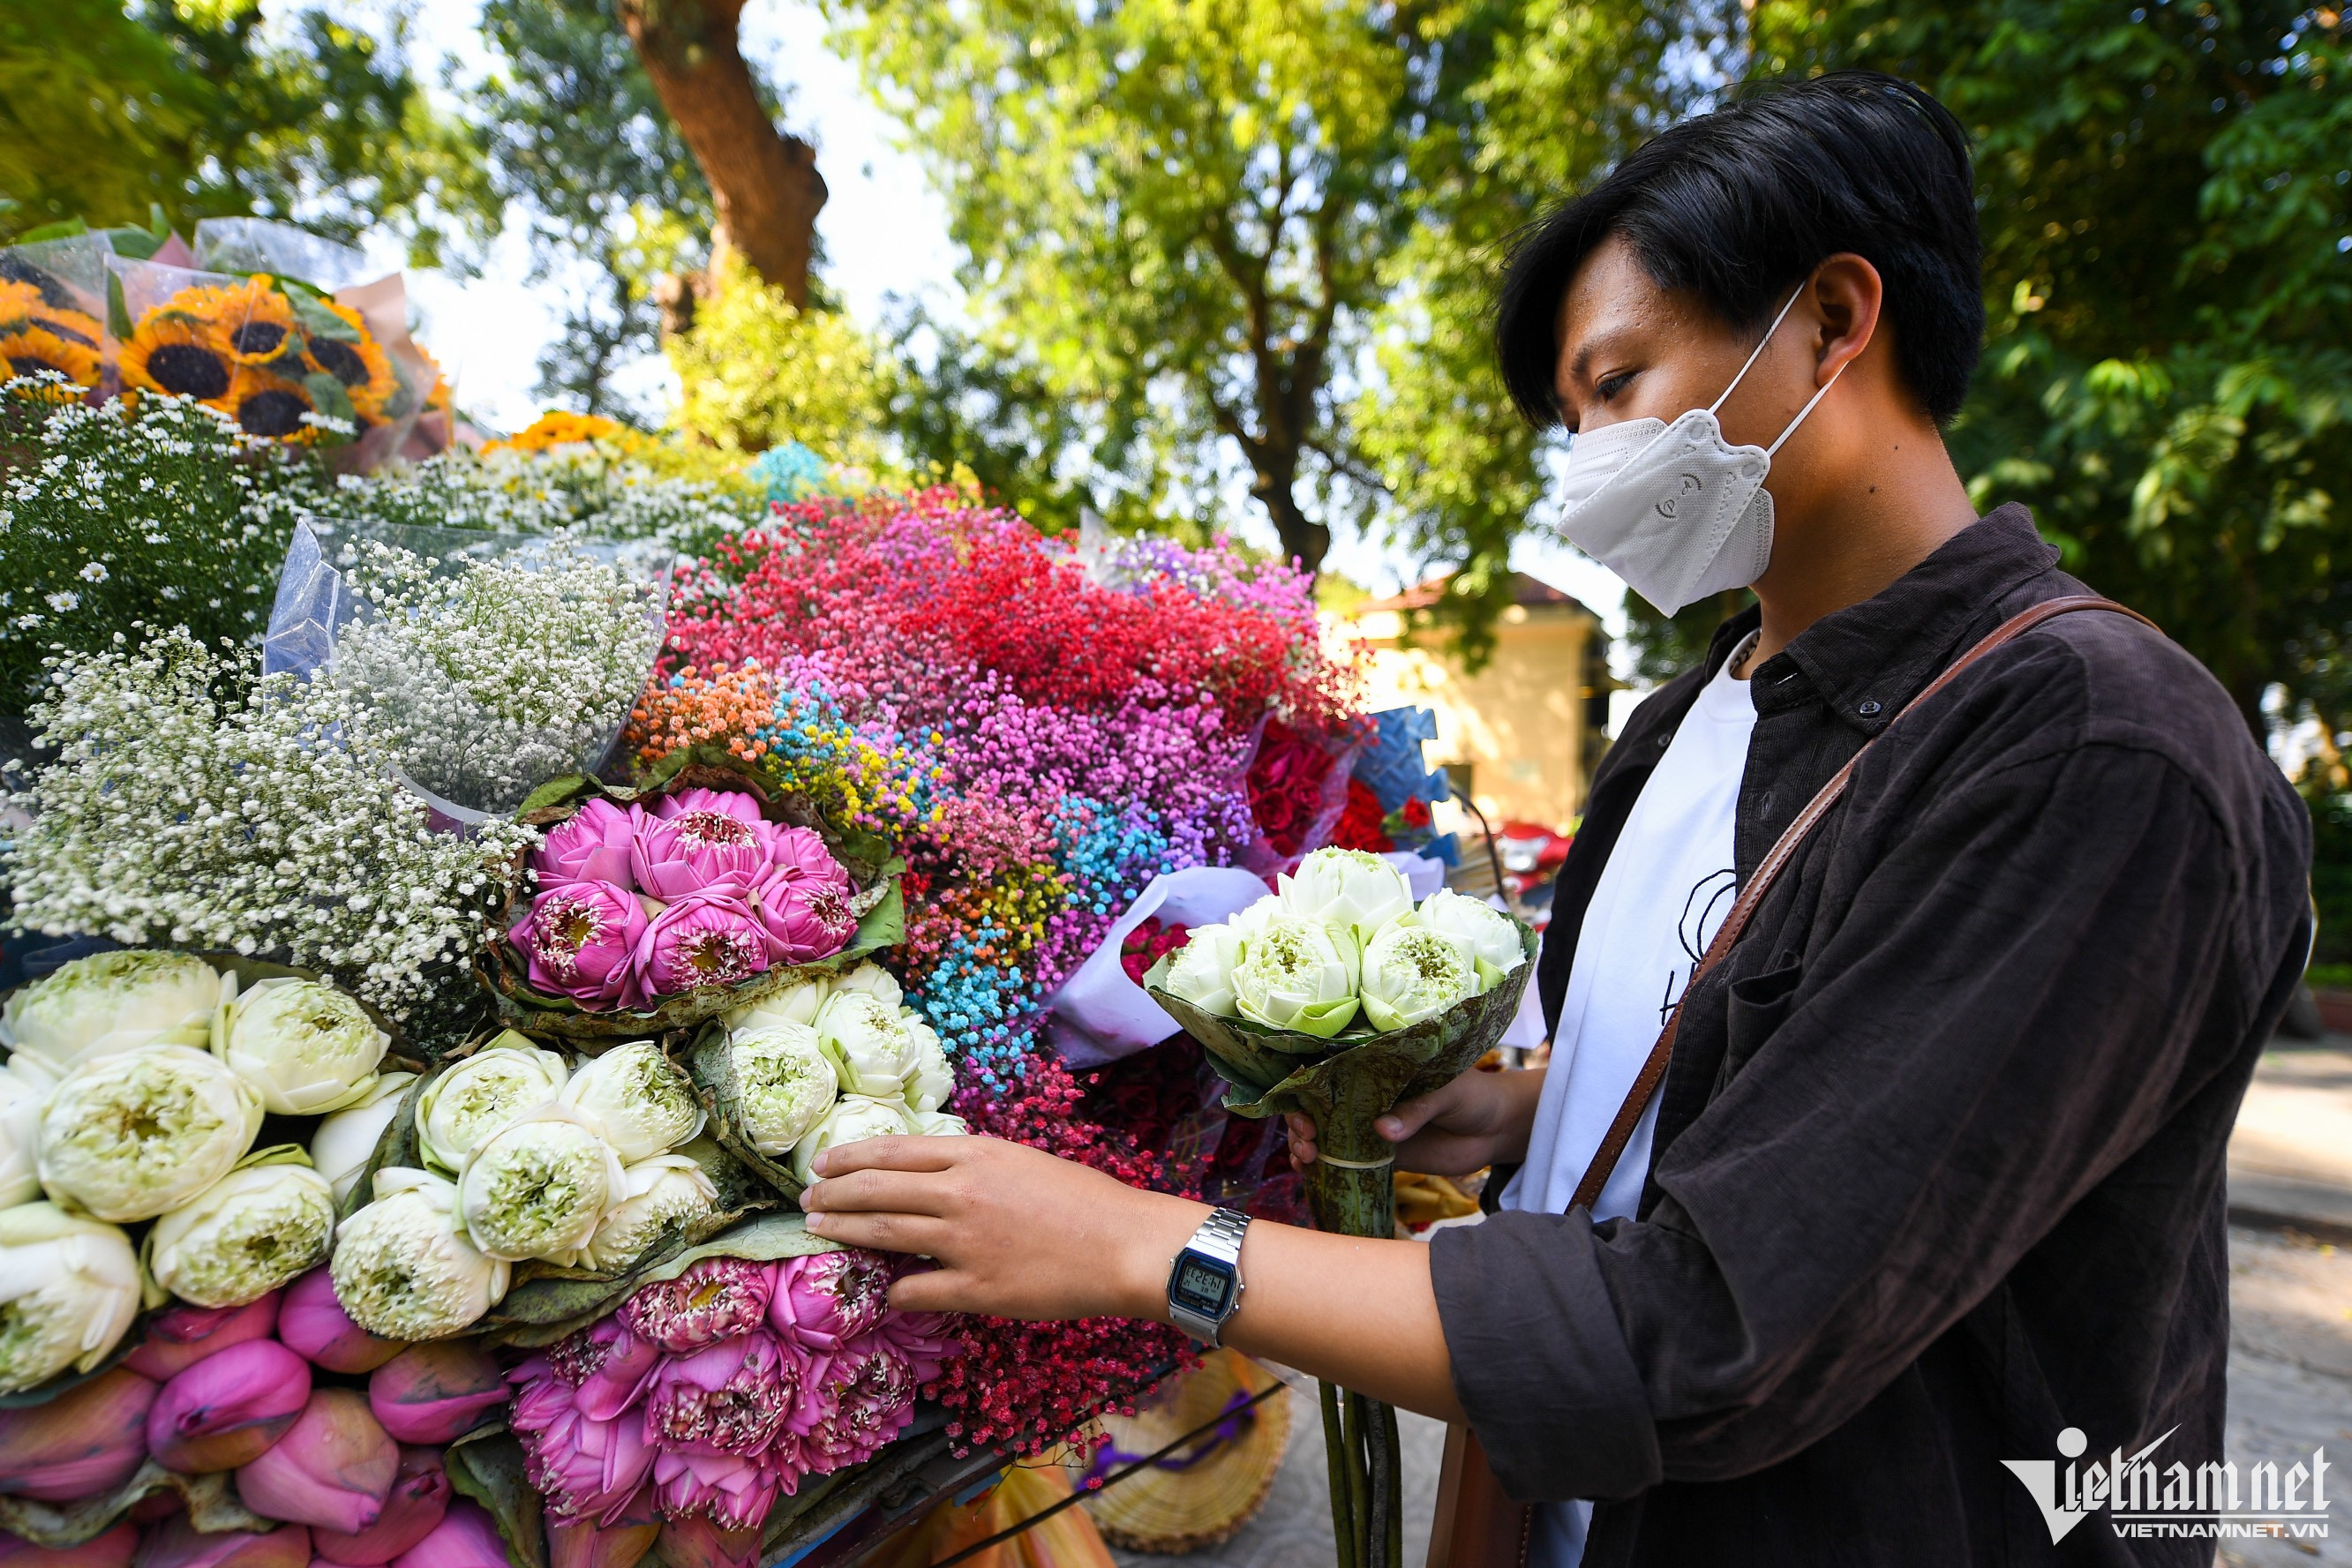 Xe chở hoa: Xe chở hoa đẹp lung linh, ngập tràn màu sắc và hương thơm tinh tế. Xem hình ảnh về xe chở hoa sẽ mang lại cảm giác mát lành, thư thái và hạnh phúc cho bạn.